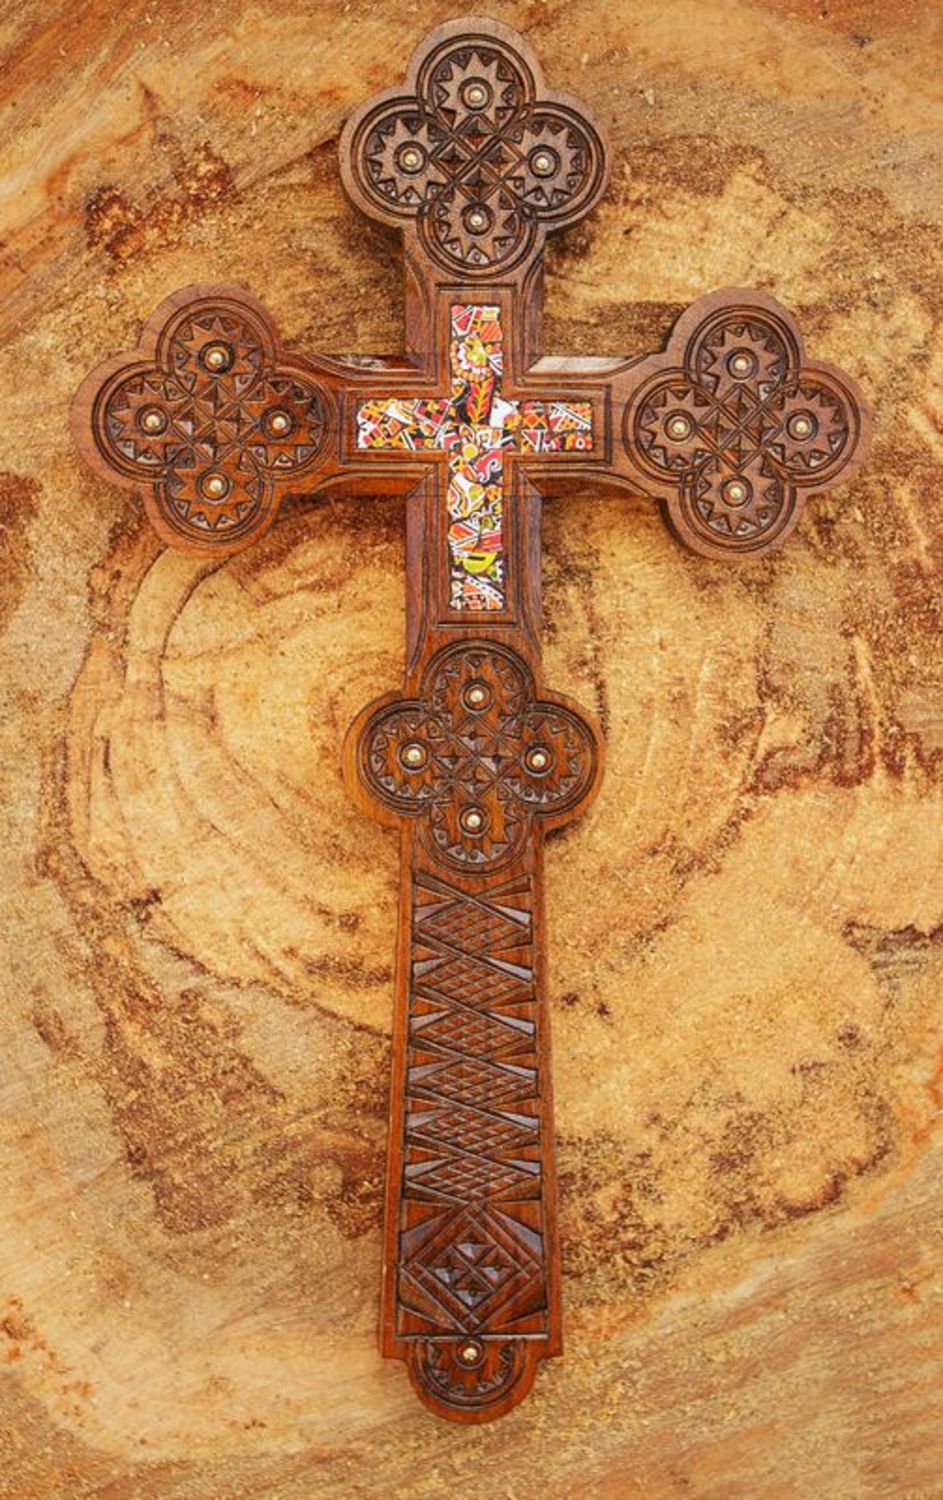 Una cruz de madera grande imagen de archivo. Imagen de ideas - 38444059